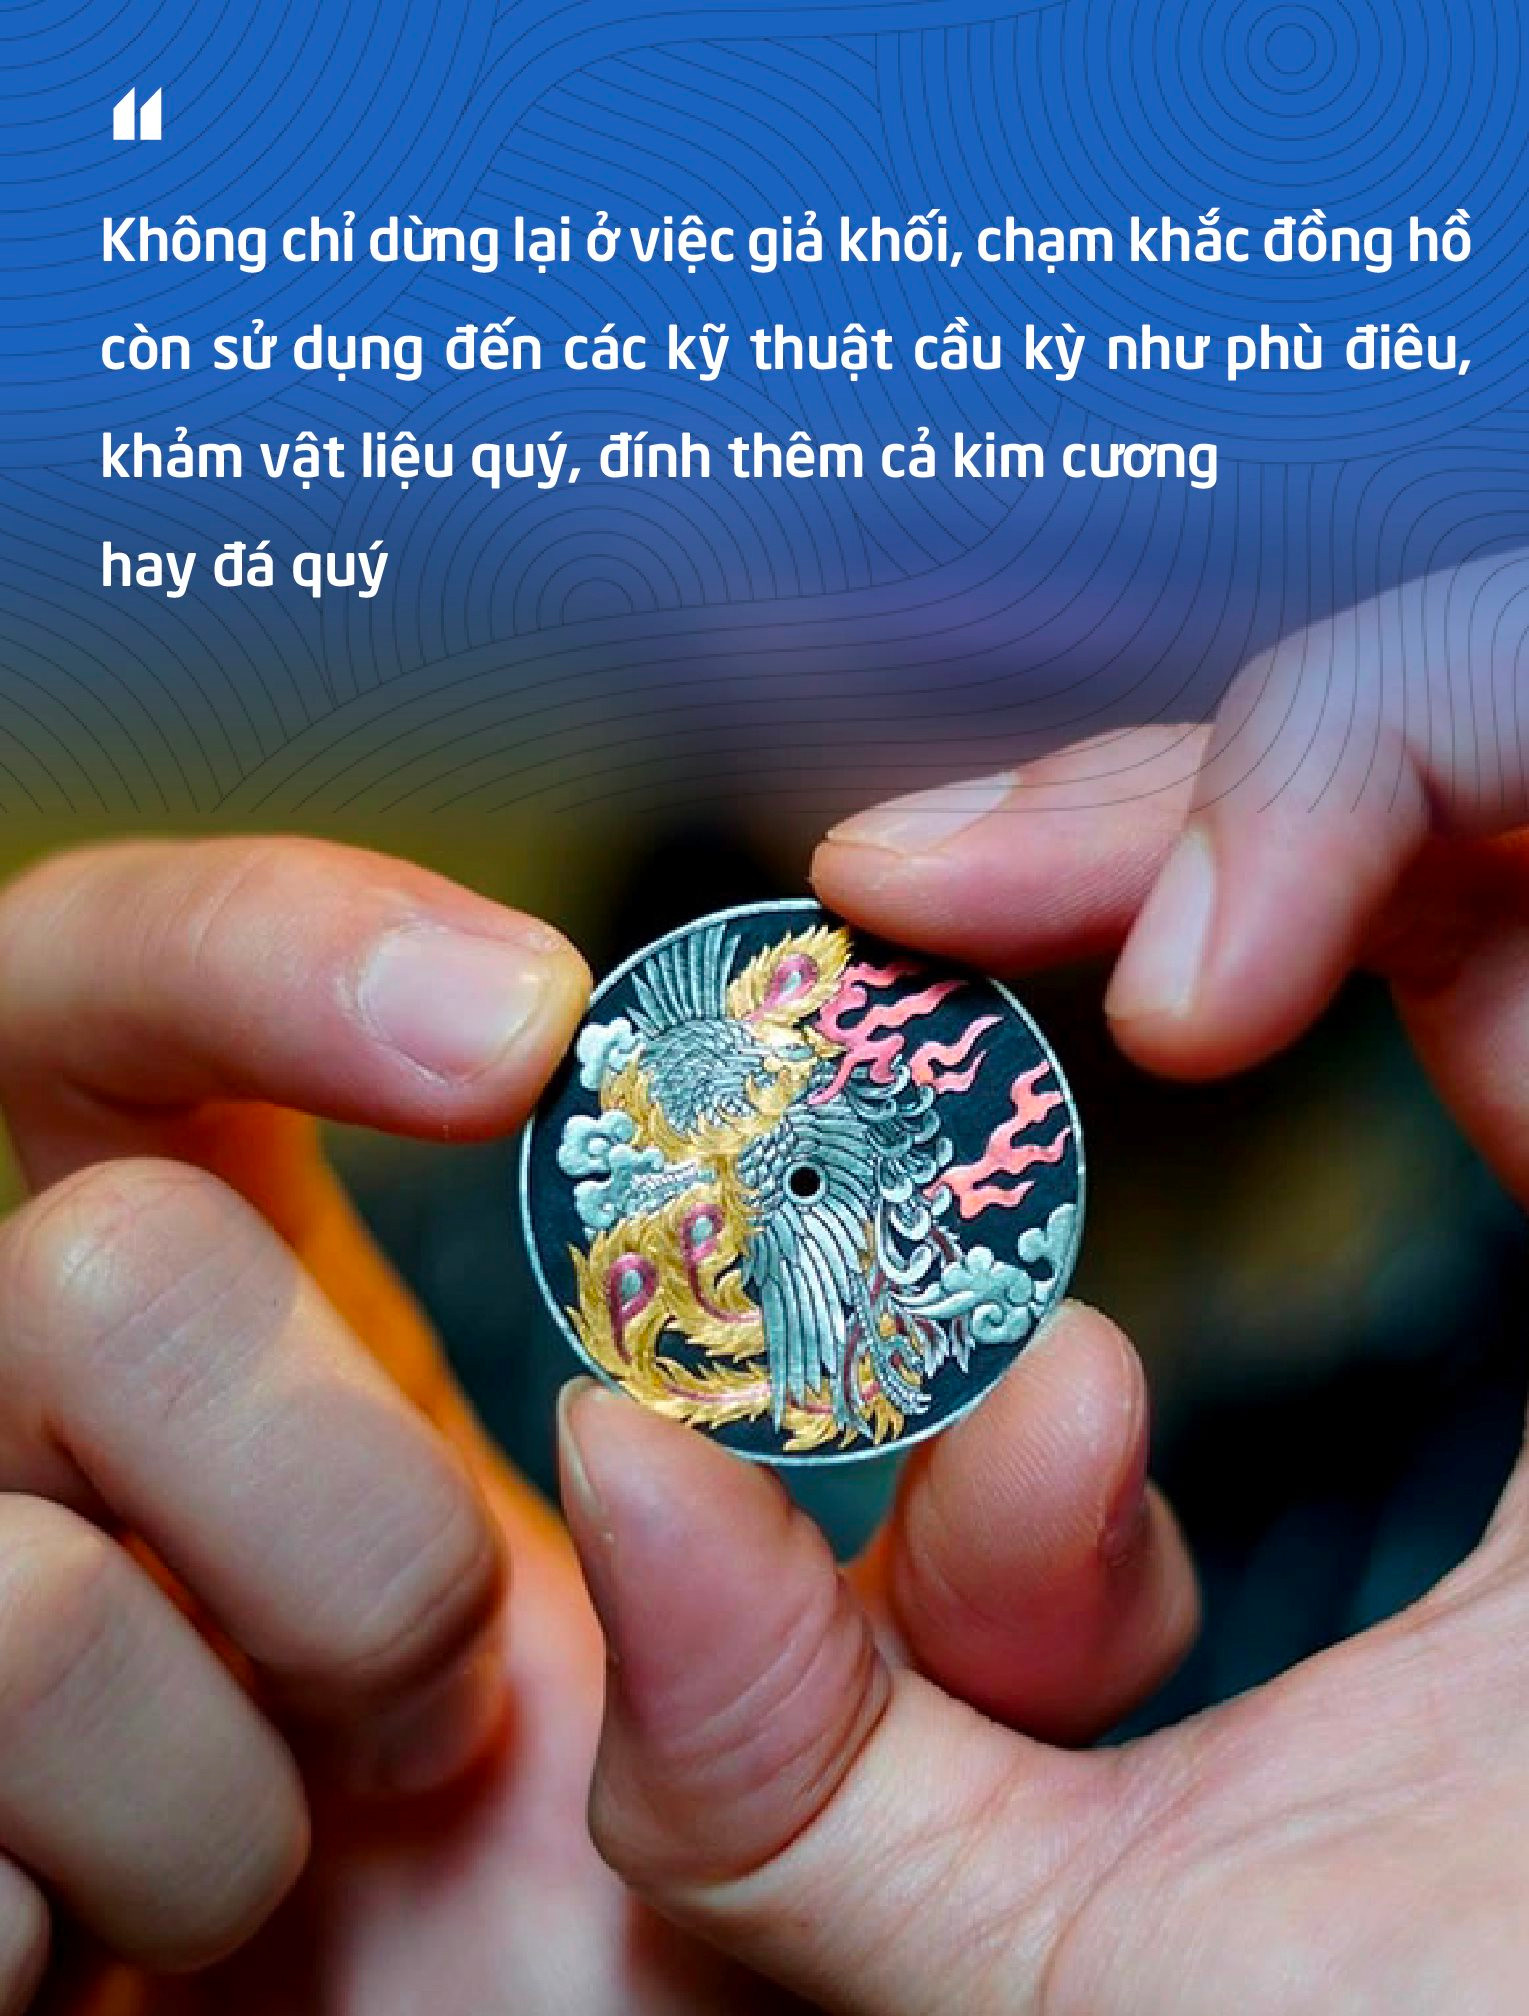 Chàng trai 8X kiếm hàng nghìn USD nhờ phục vụ thú chơi lạ cho đại gia Việt: ‘Xăm’ trên đồng hồ khó hơn gấp nhiều lần so với xăm trên da người- Ảnh 6.